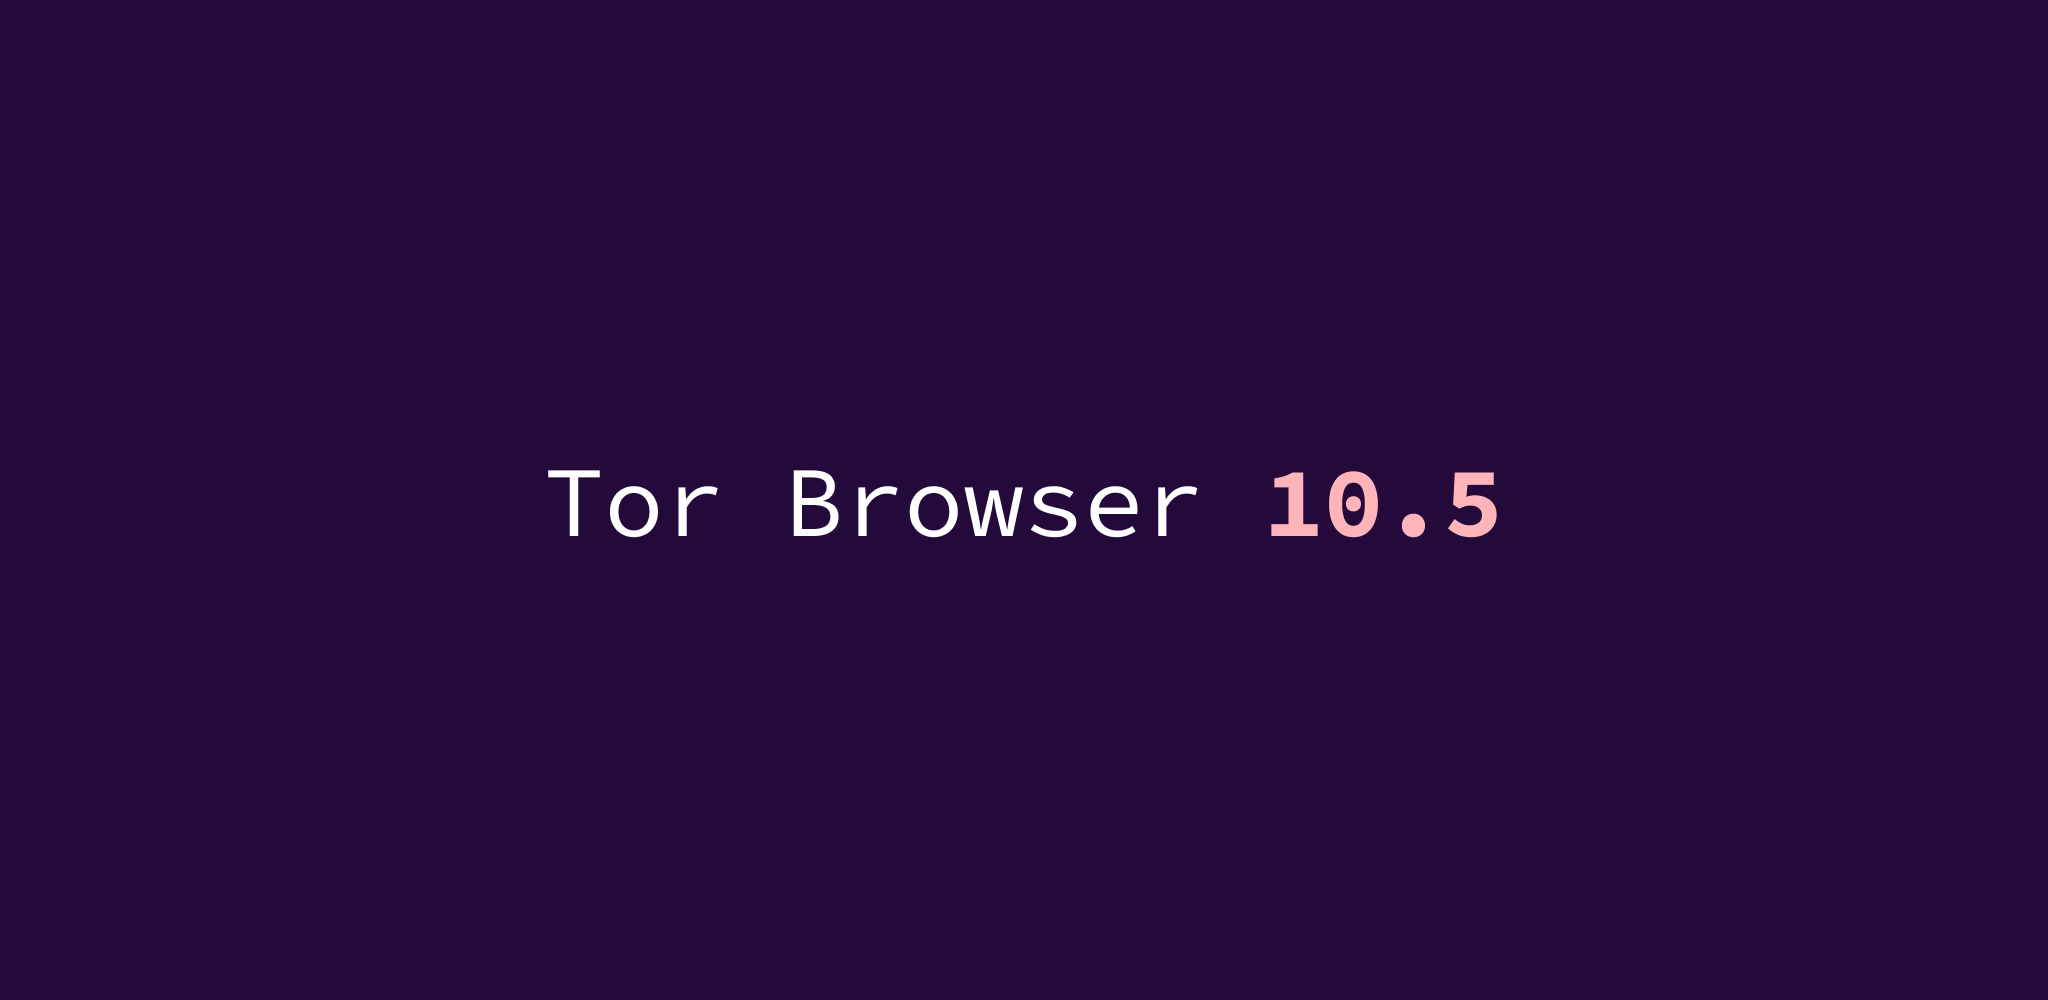 Tor browser v3 onion скачать медицинская марихуана что лечит